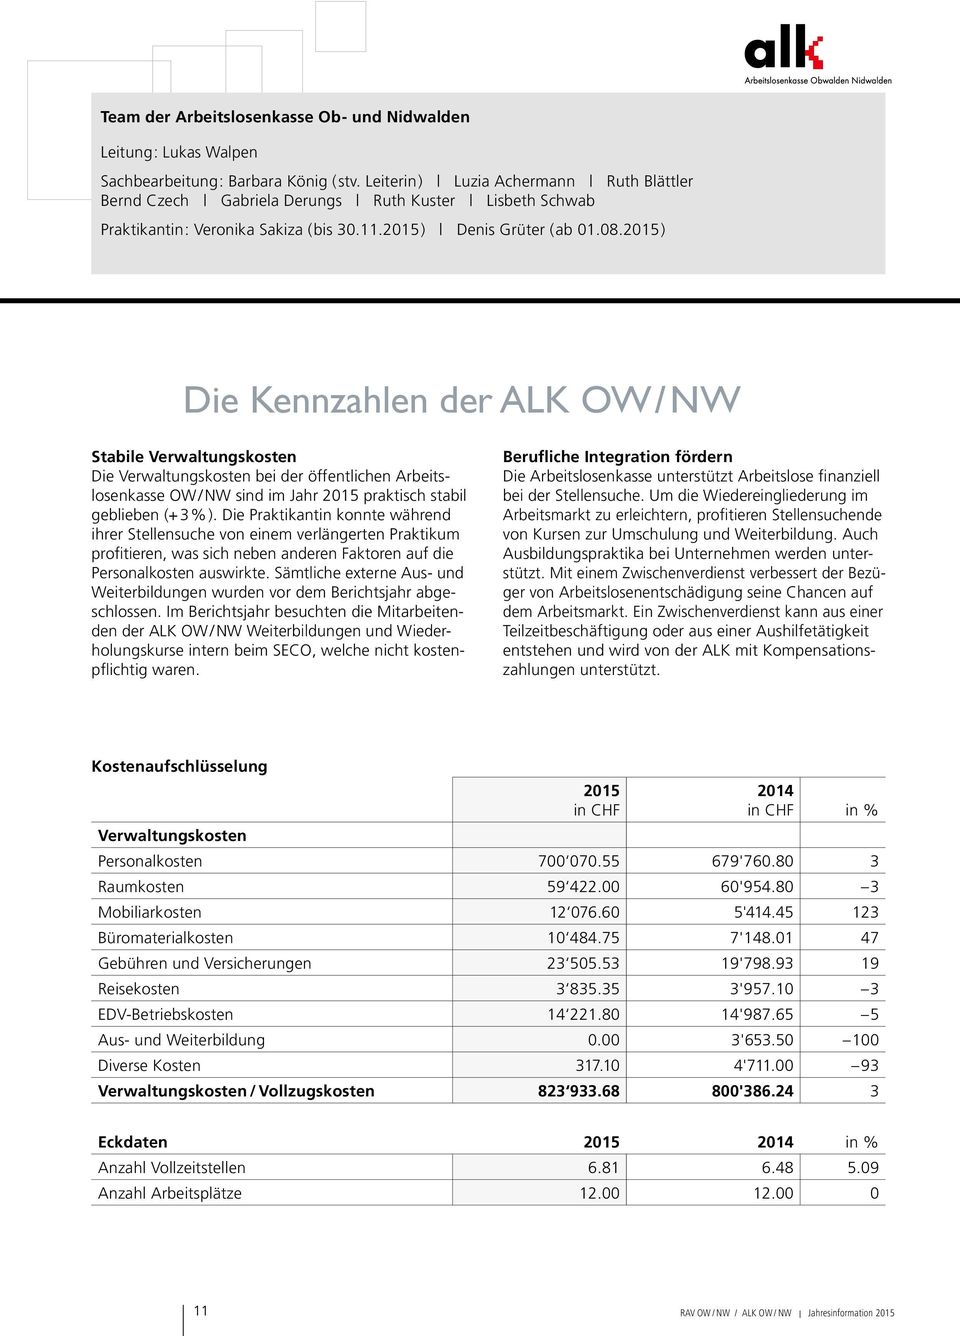 2015) Die Kennzahlen der ALK OW/NW Stabile Verwaltungskosten Die Verwaltungskosten bei der öffentlichen Arbeitslosenkasse OW/NW sind im Jahr 2015 praktisch stabil geblieben (+3%).